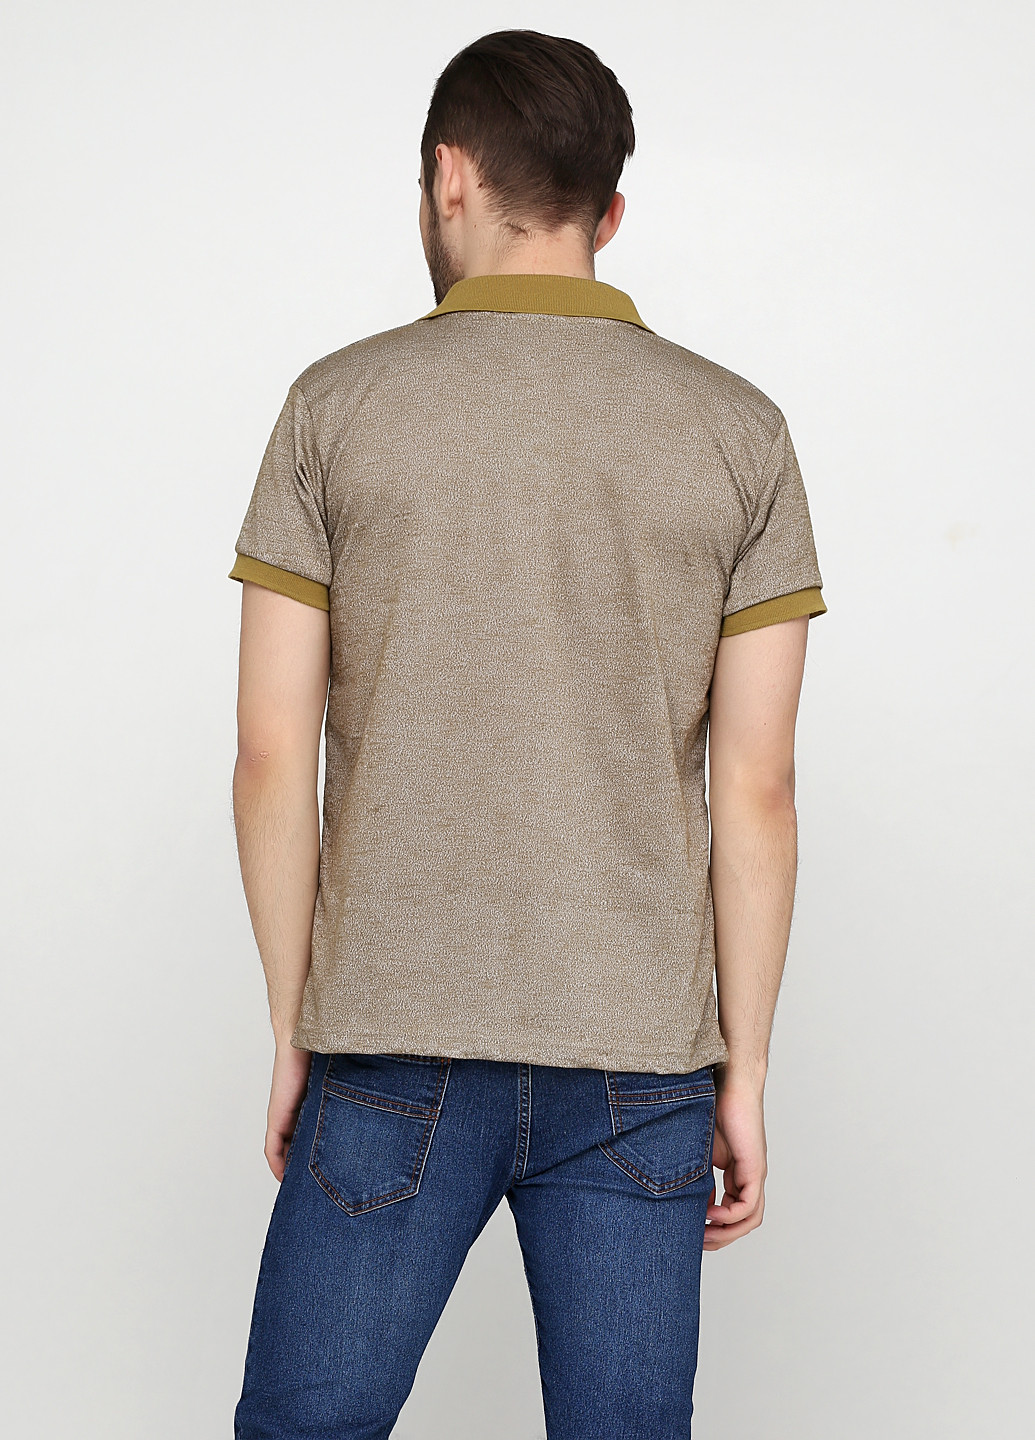 Песочная футболка-поло для мужчин Chiarotex меланжевая